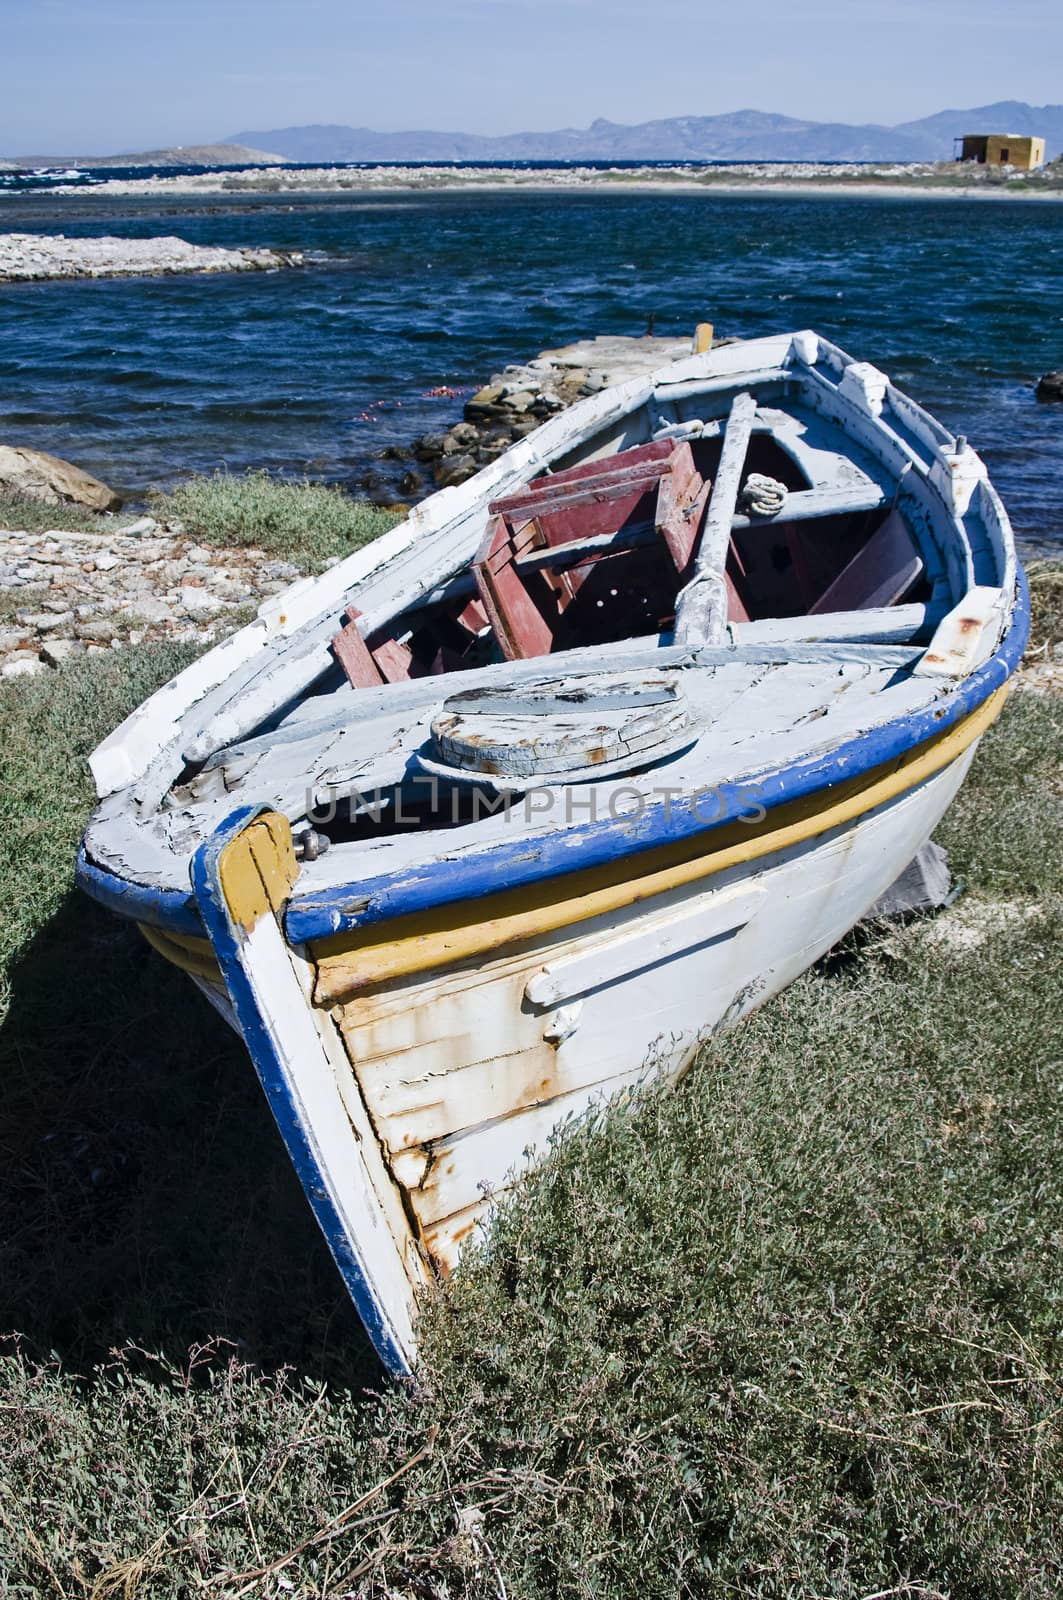 Old Fishing Boat, taken in Greece